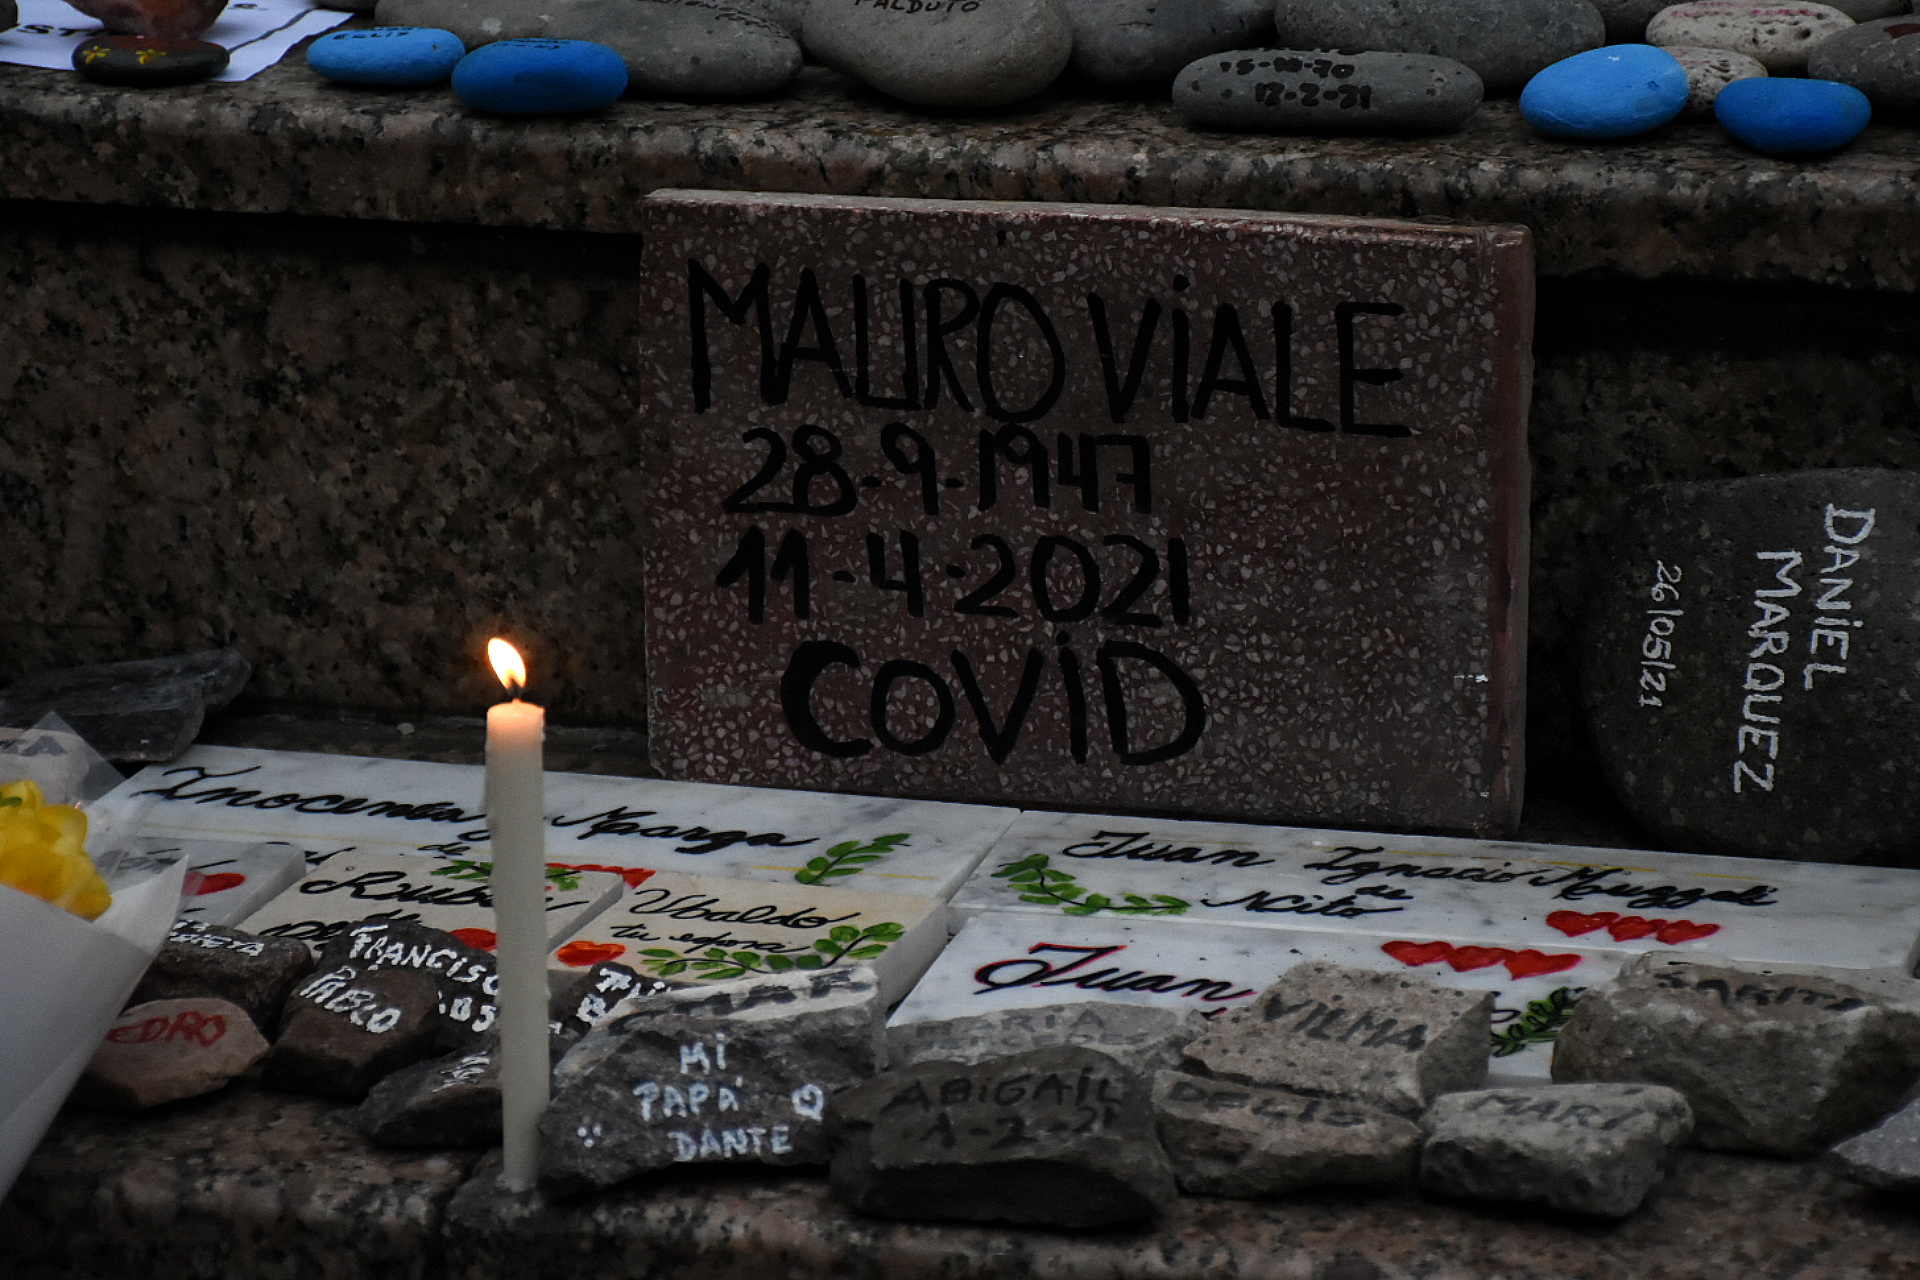 También se recordó a Mauro Viale, el reconocido periodista fallecido en pandemia